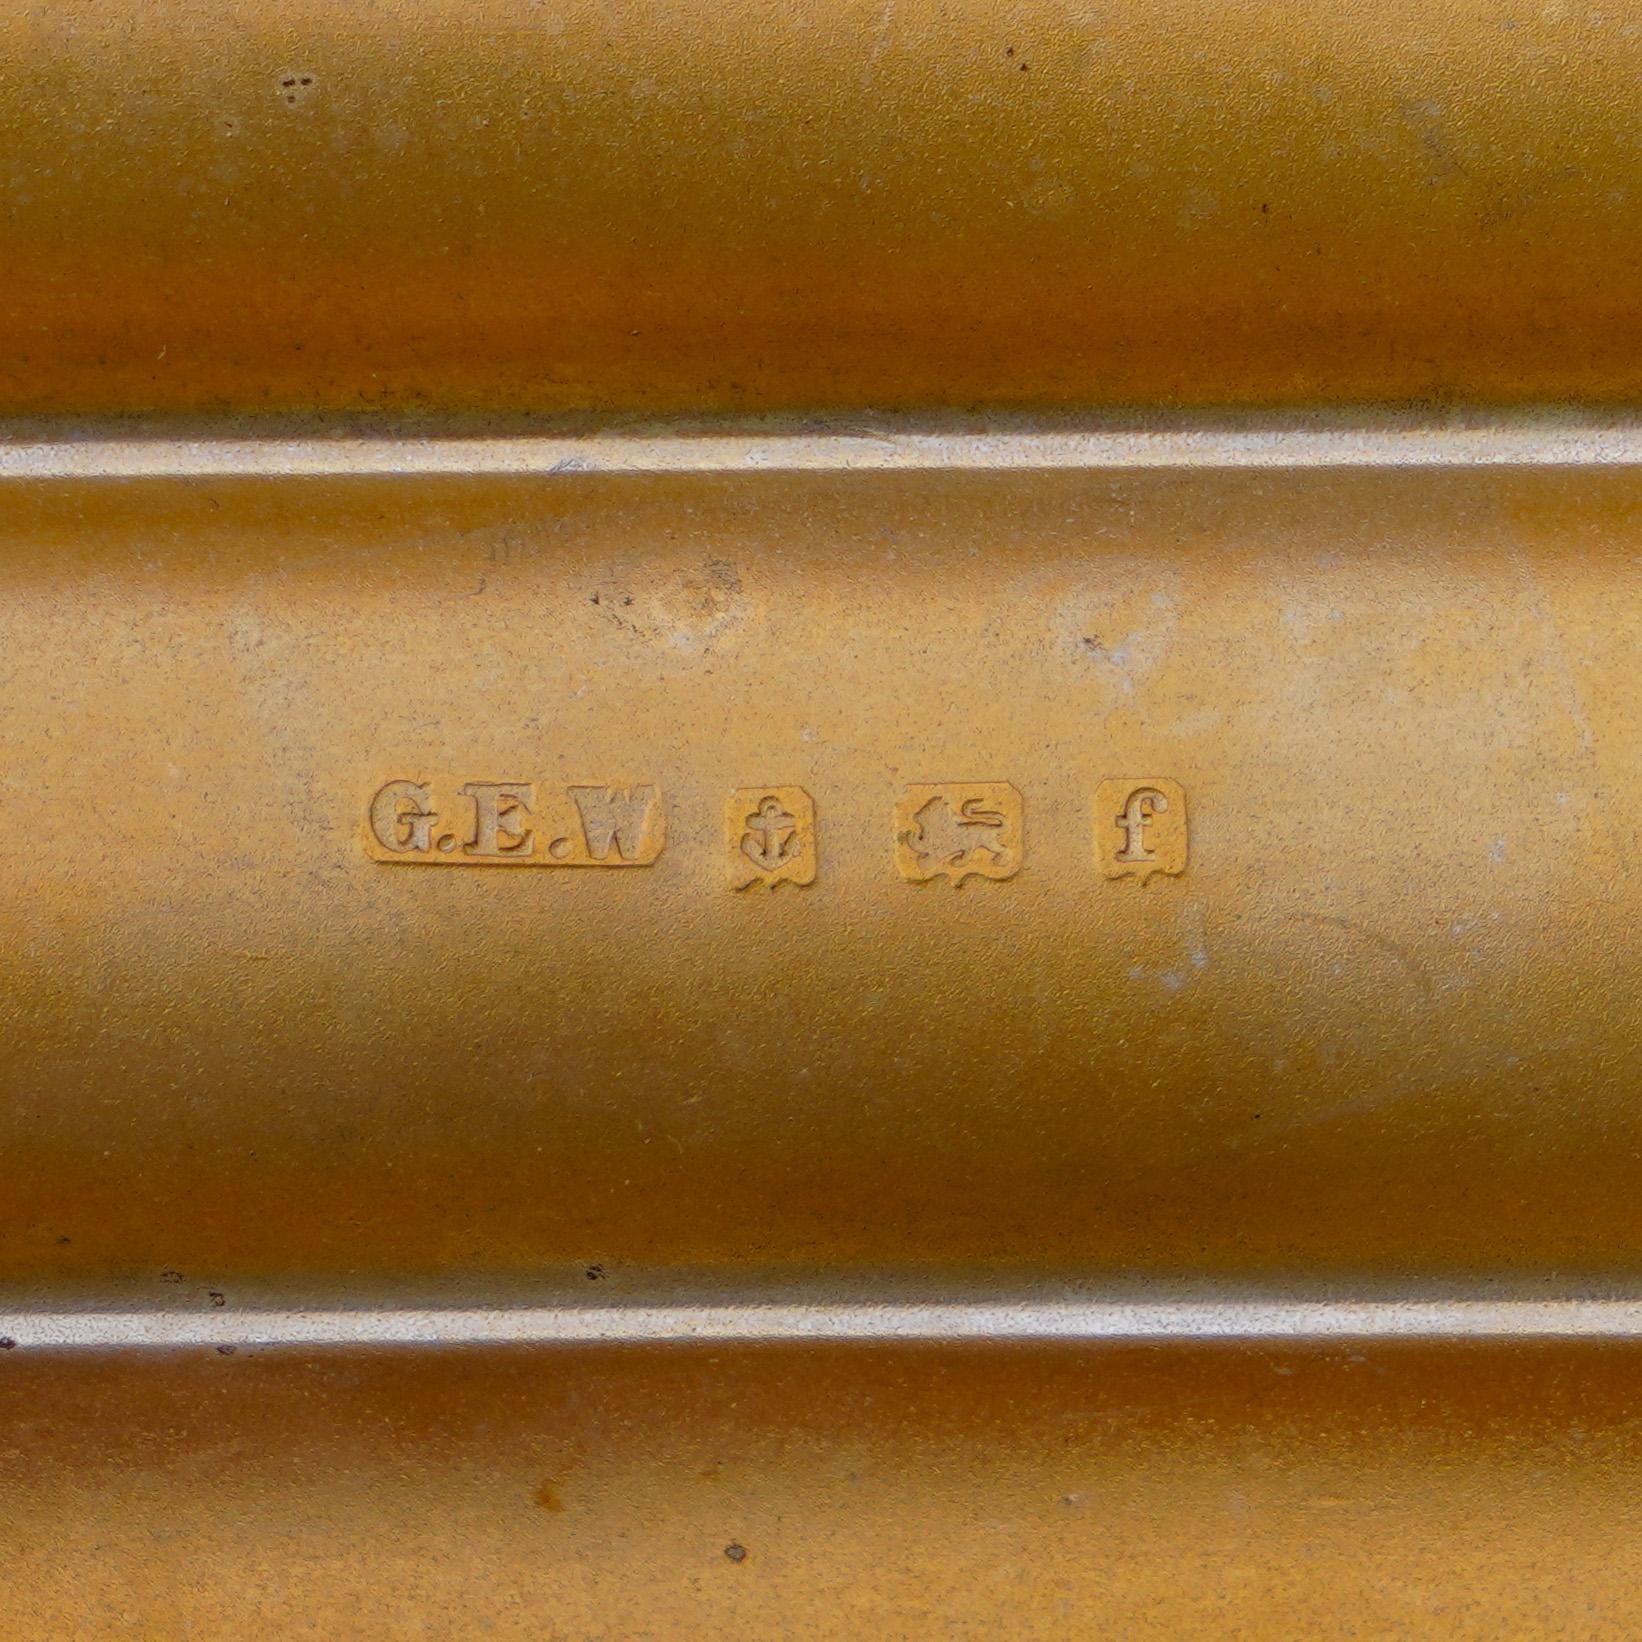 Edwardian Sterling Silver Three-Tube Cigar Case by G E Walton & Co Ltd., 1905 1